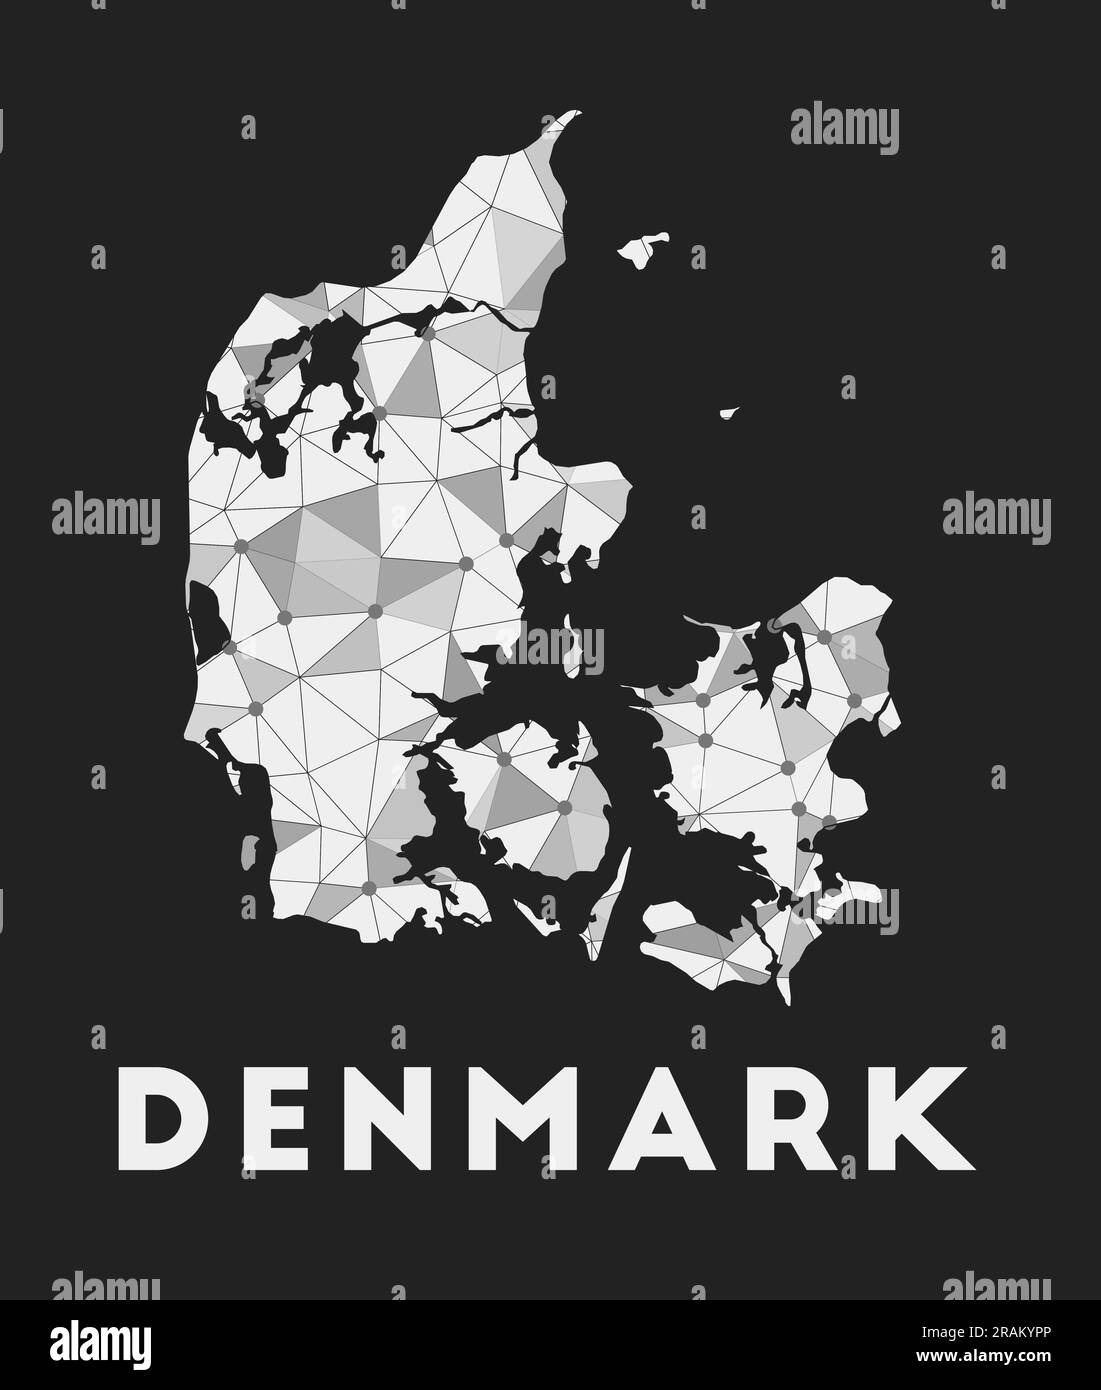 Dänemark - Karte des Kommunikationsnetzes des Landes. Dänemark: Trendiges geometrisches Design auf dunklem Hintergrund. Technologie, Internet, Netzwerk, Telekommunikation c Stock Vektor